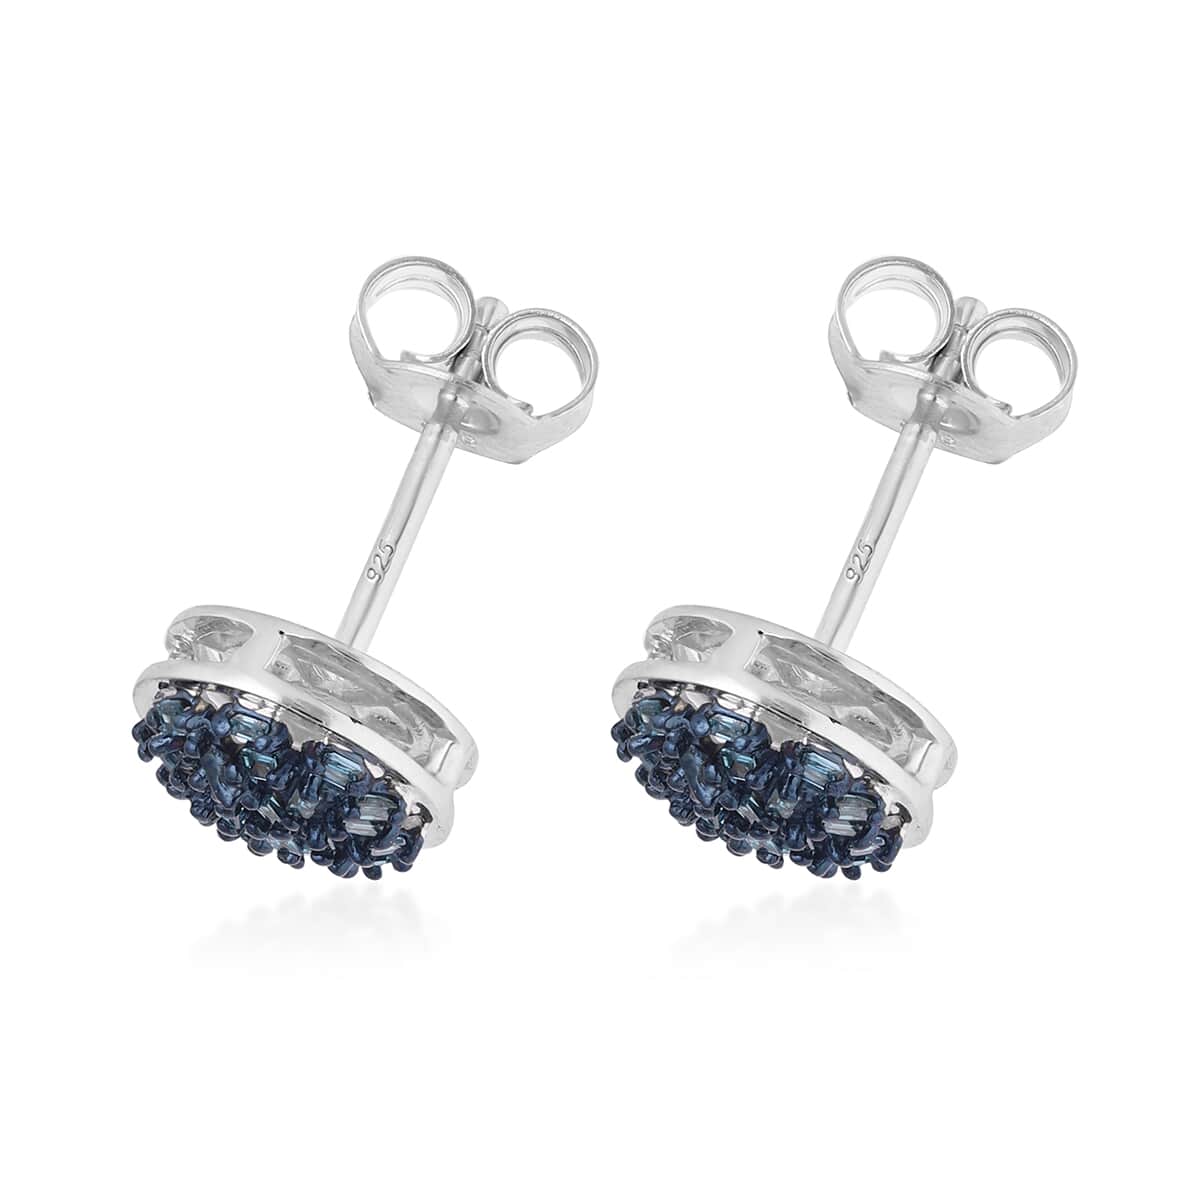 Buy Venice Blue Diamond I1-I2 Stud Earrings in Platinum Over Sterling ...